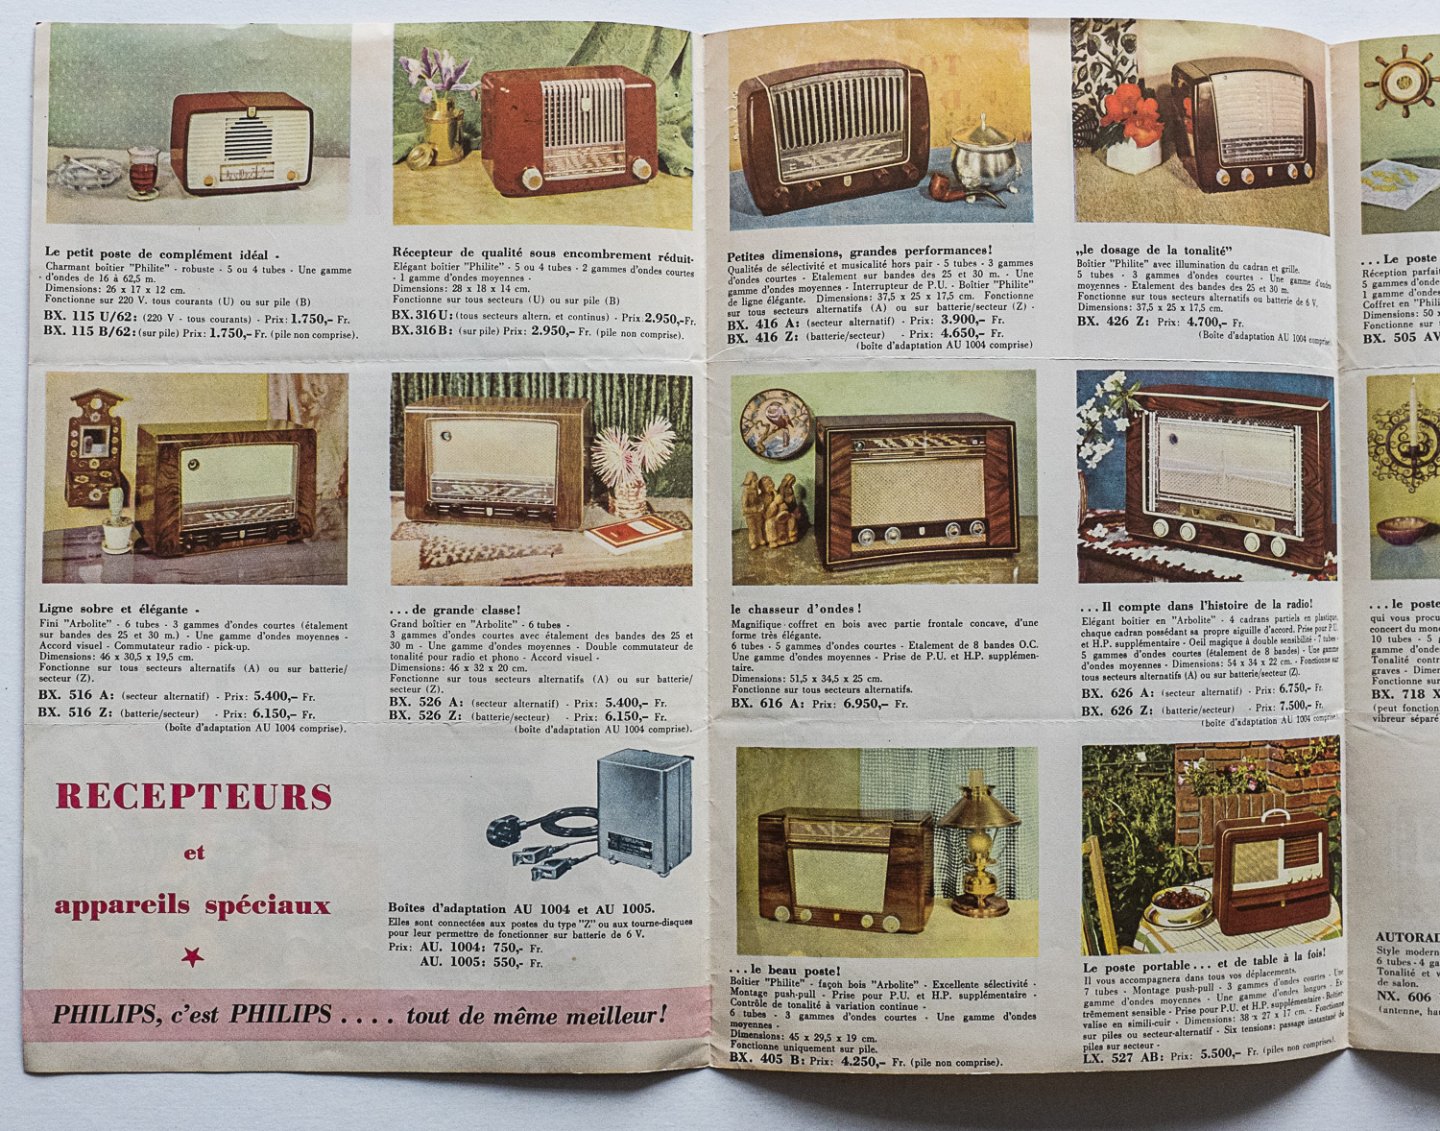 Philips Gloeilampenfabrieken Nederland n.v., Eindhoven - Catalogue Philips radio - Congo